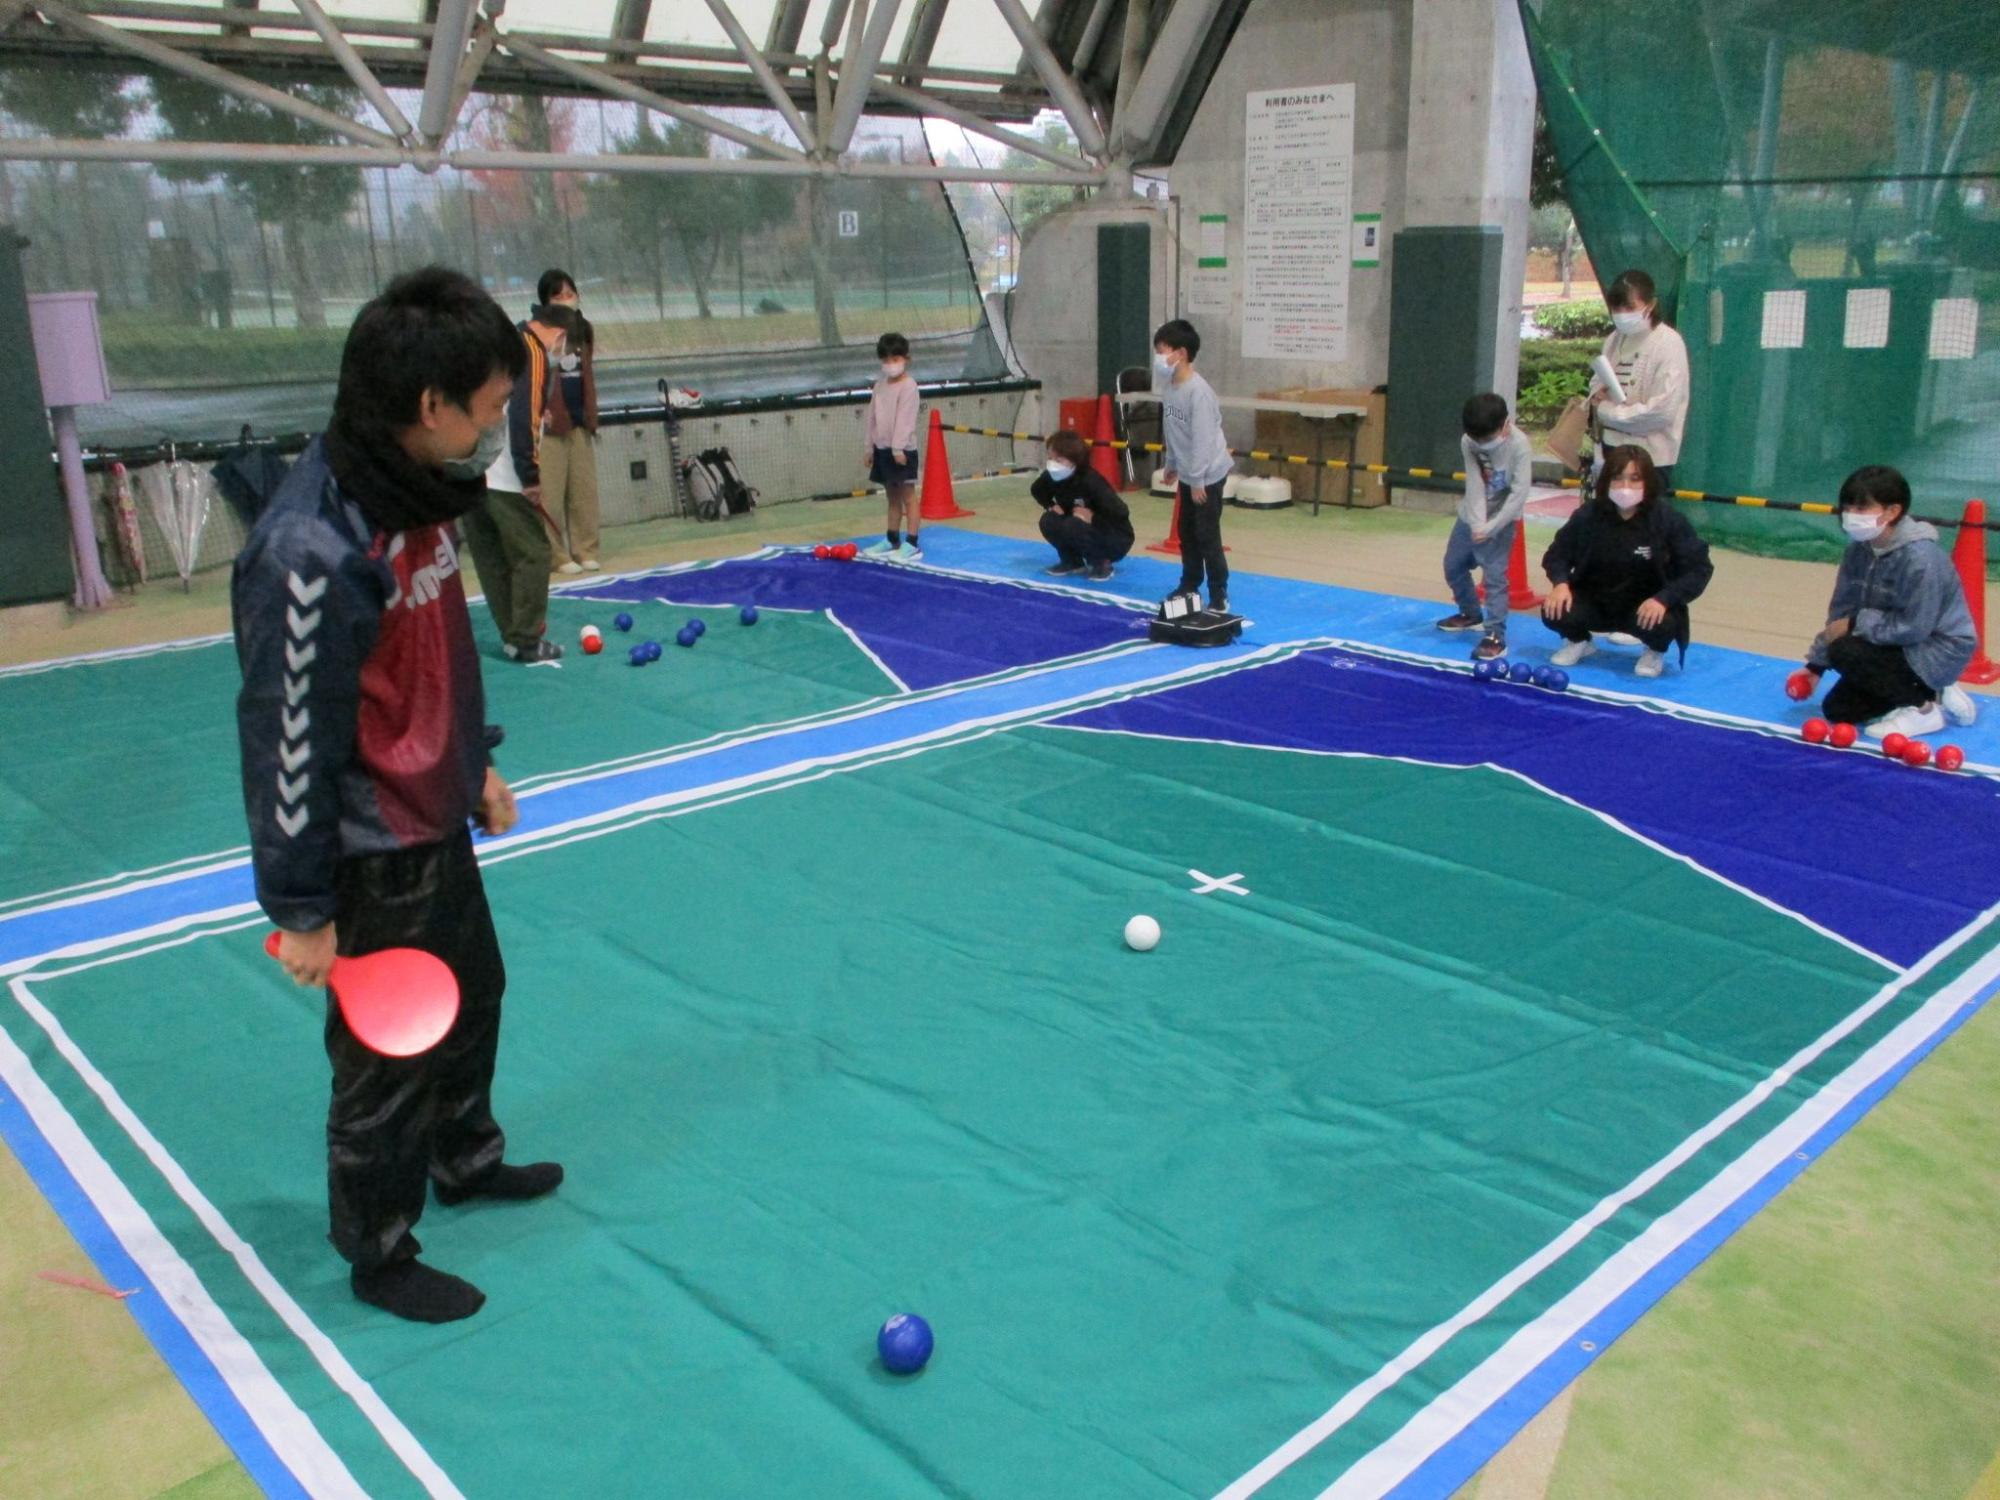 中央の印の傍に白色のボールがあり、左側の卓球のラケットの様な道具を右手で持って立っている男性と右側に赤色のボールを持って座っている女性が向かい合っている写真